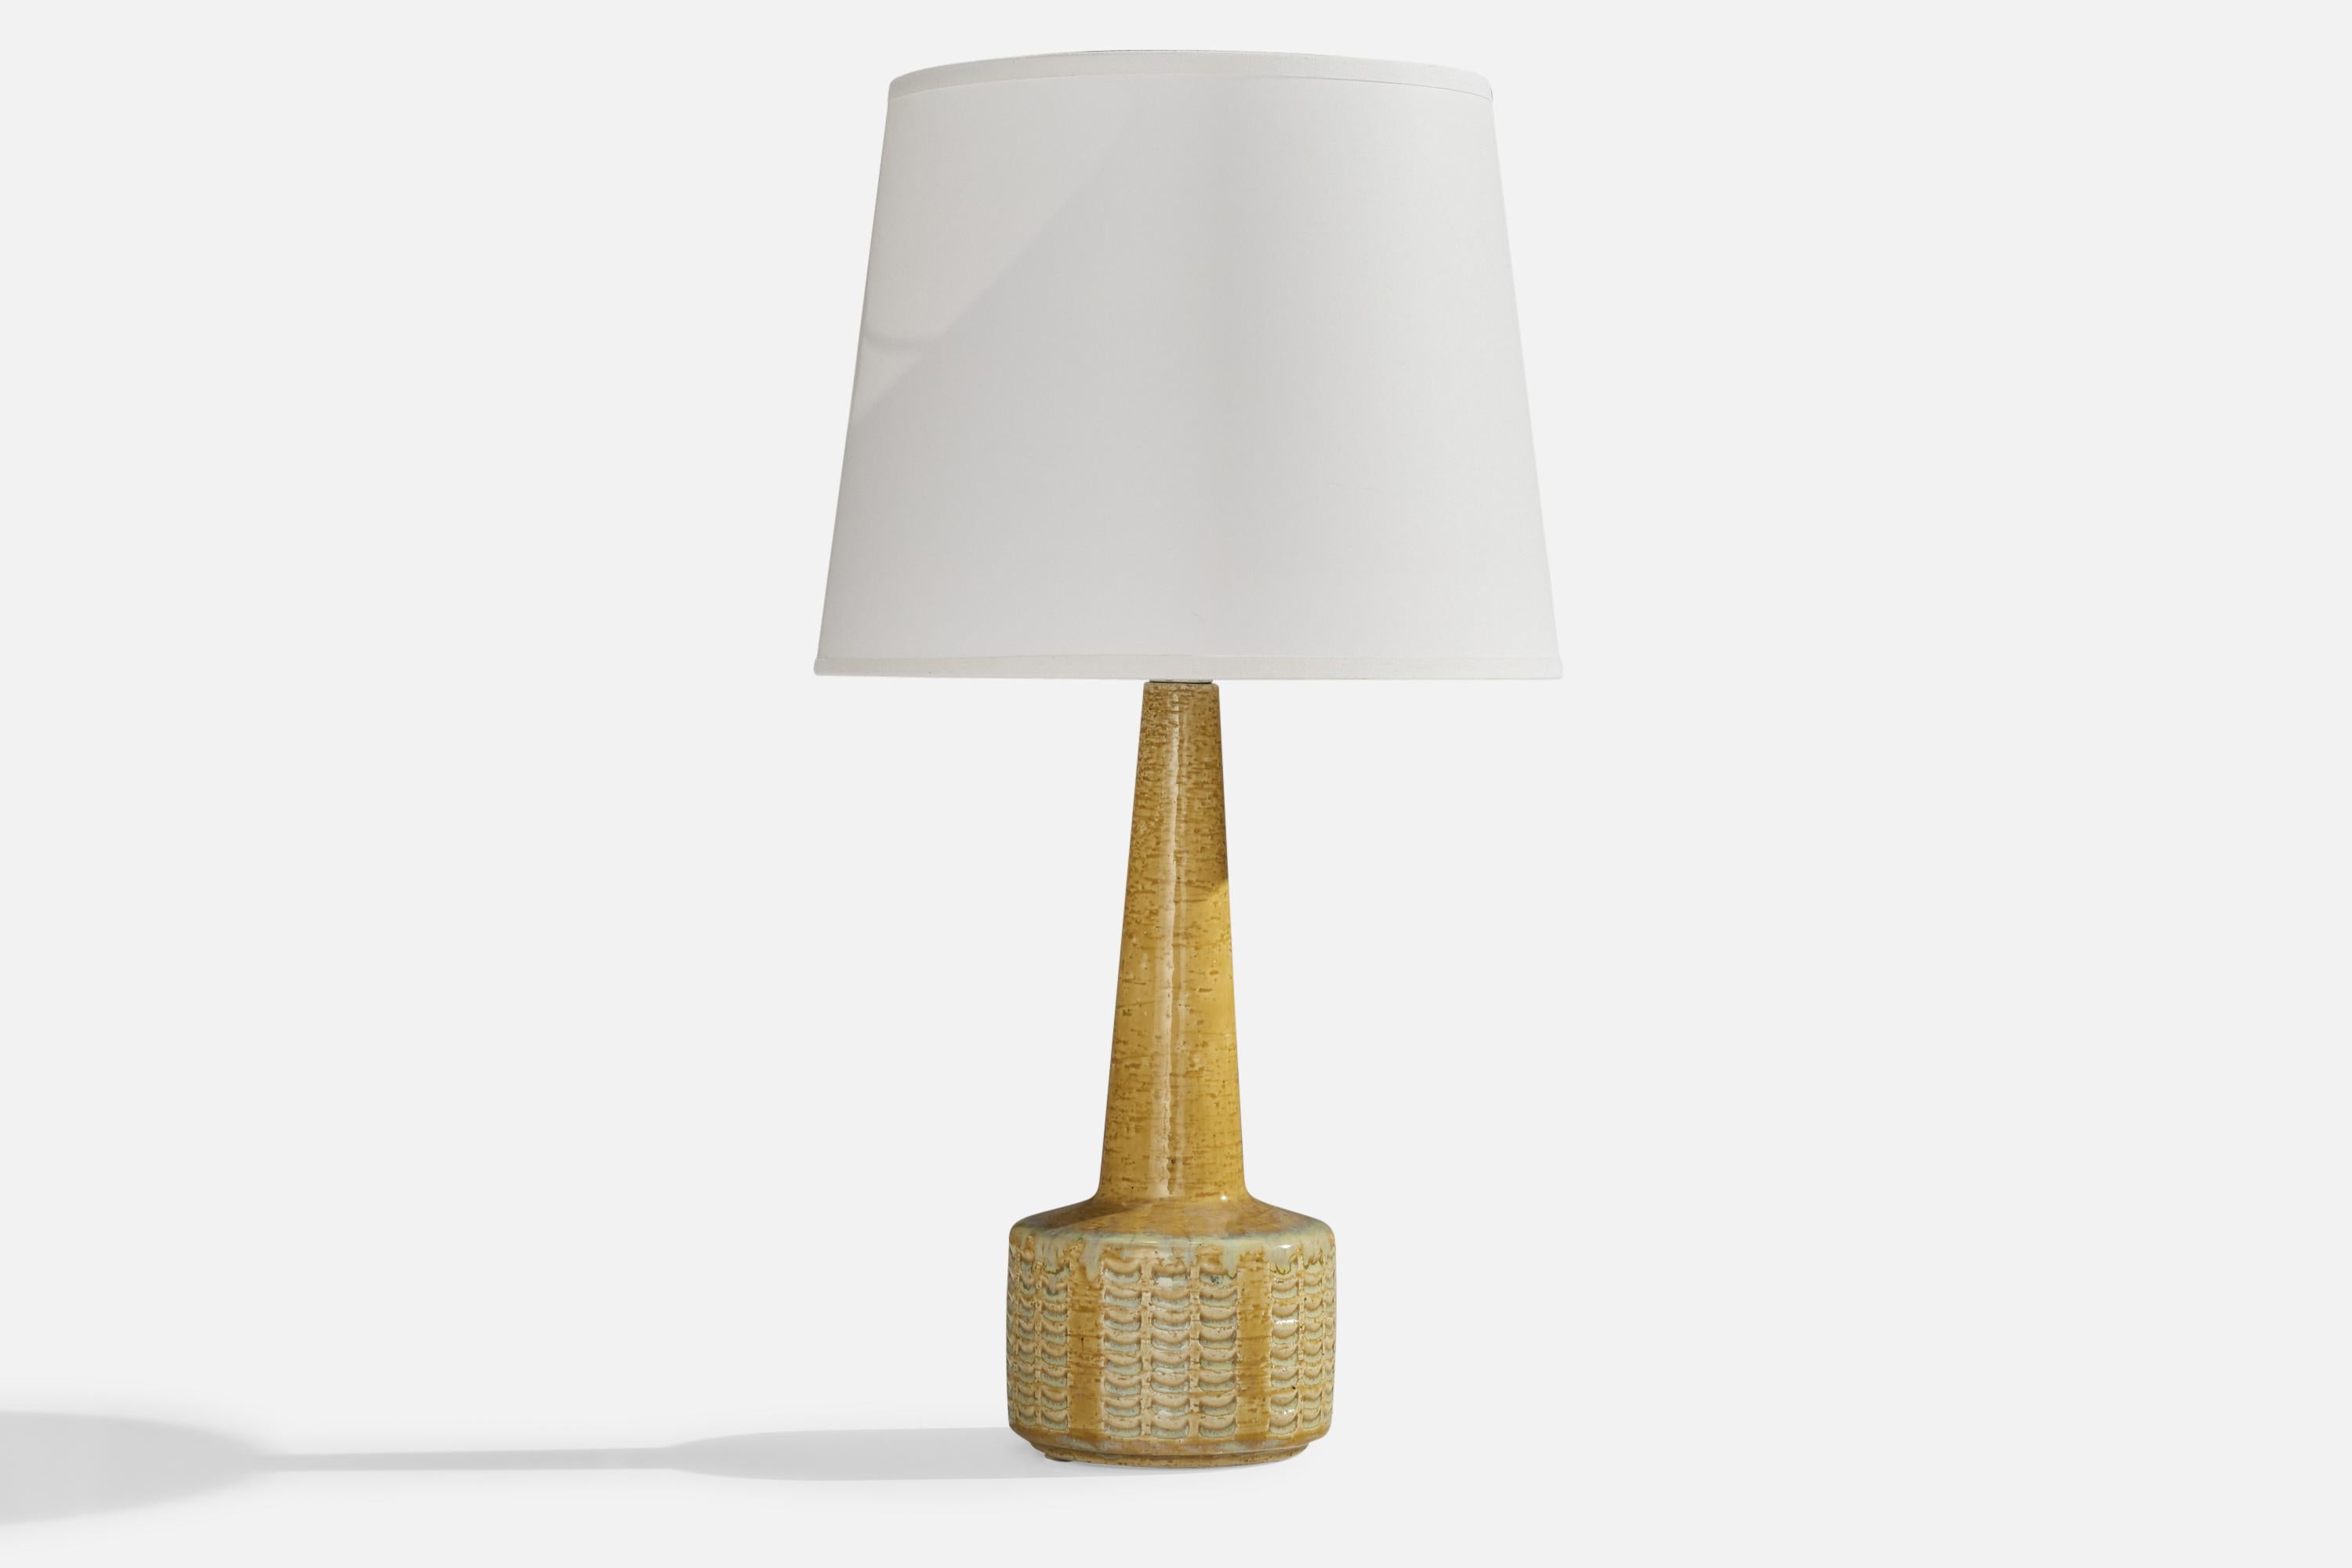 Lampe de table en grès émaillé jaune conçue par Per & Annelise Linneman-Schmidt et produite par Palshus, Danemark, années 1960.

Dimensions de la lampe (pouces) : 13